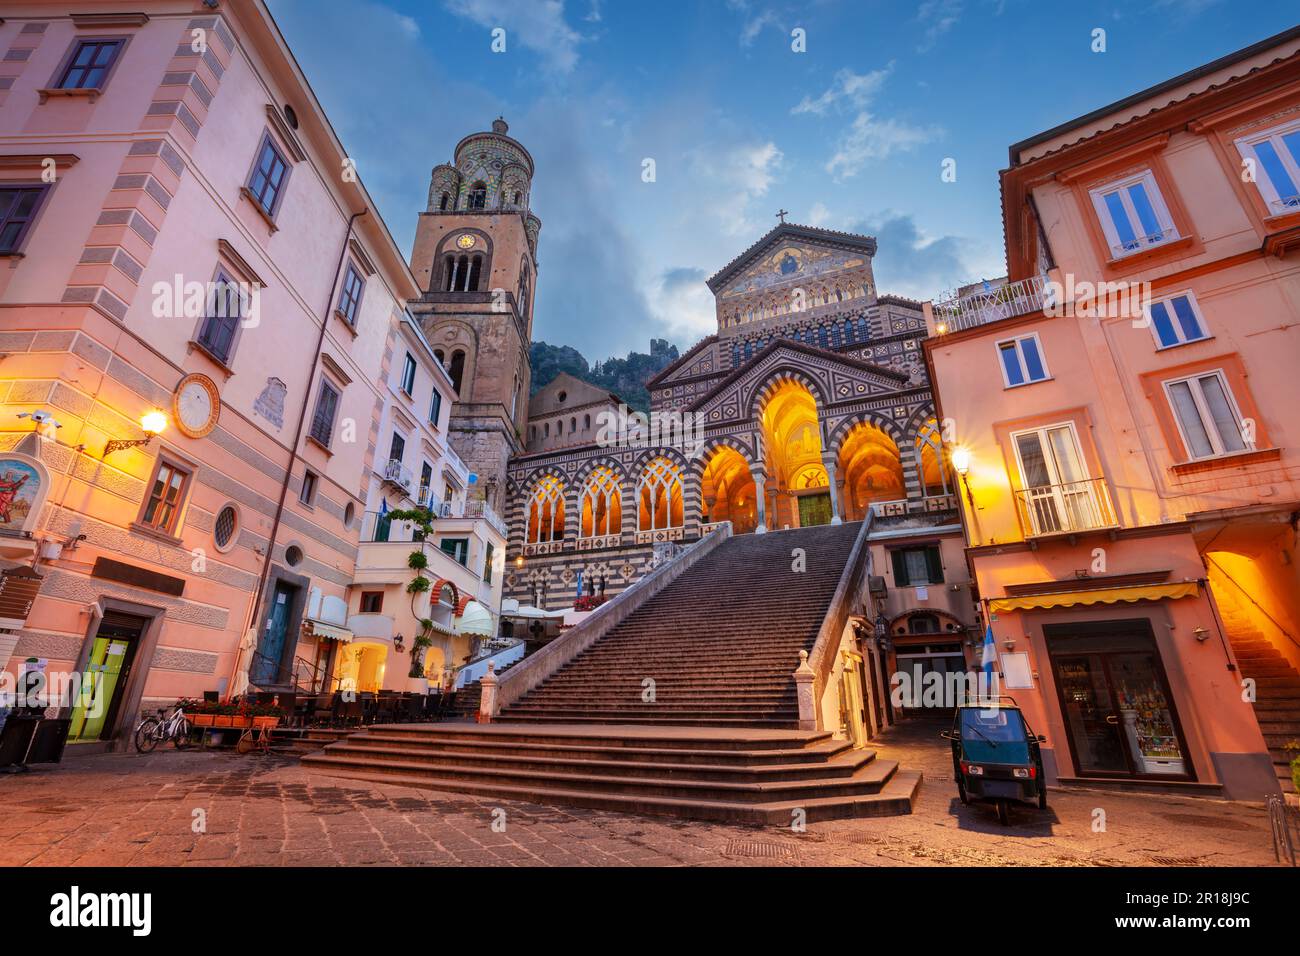 Amalfi, Italy. Cityscape image of famous coastal city Amalfi, located on Amalfi Coast, Italy at sunrise. Stock Photo